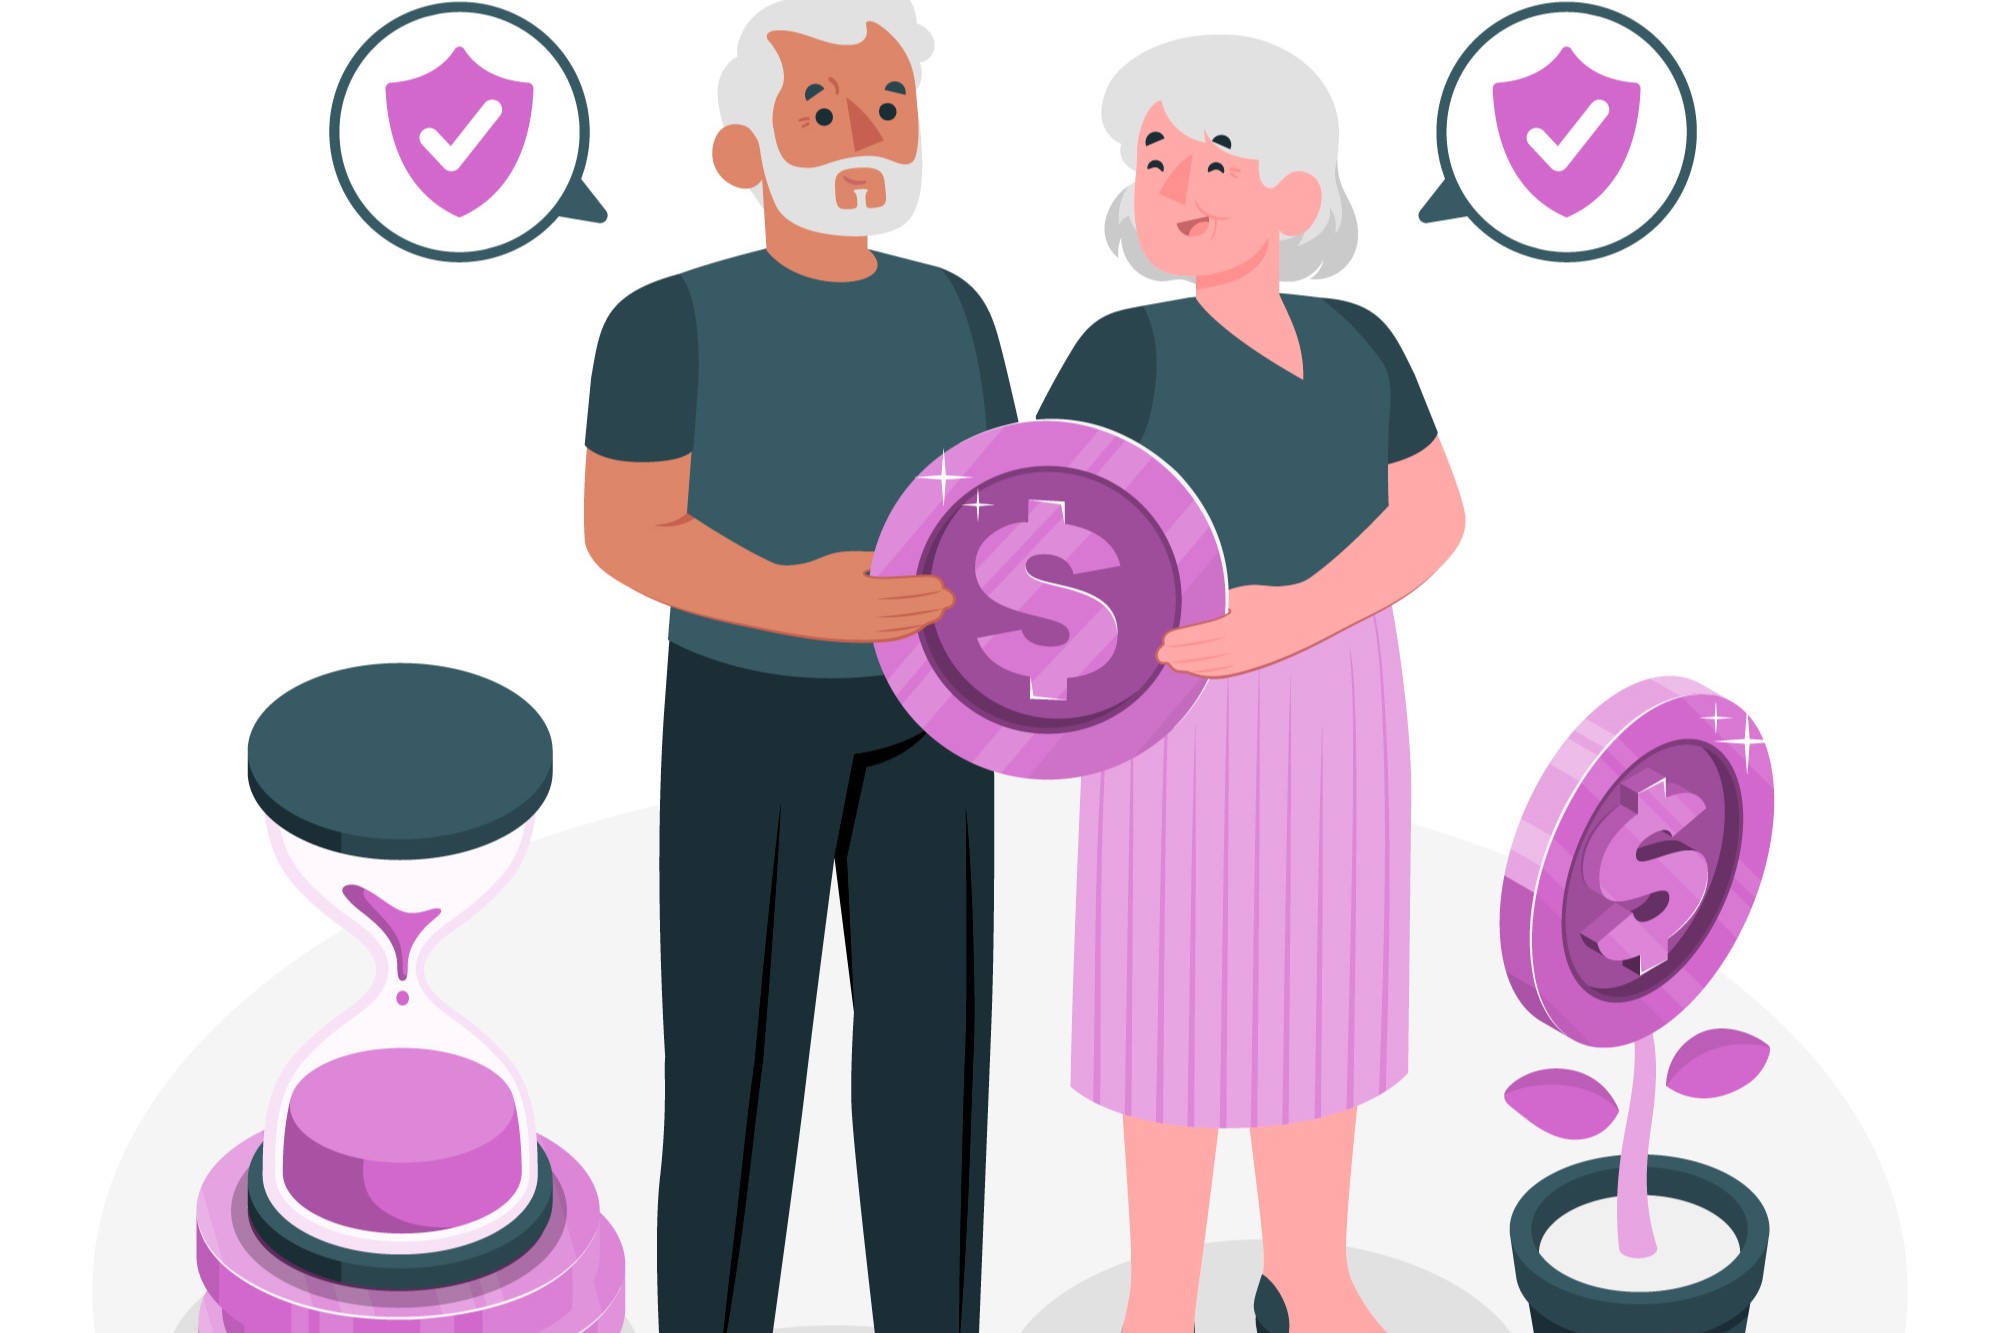 Préstamos rápidos para jubilados: cómo obtener financiamiento rápido en la jubilación